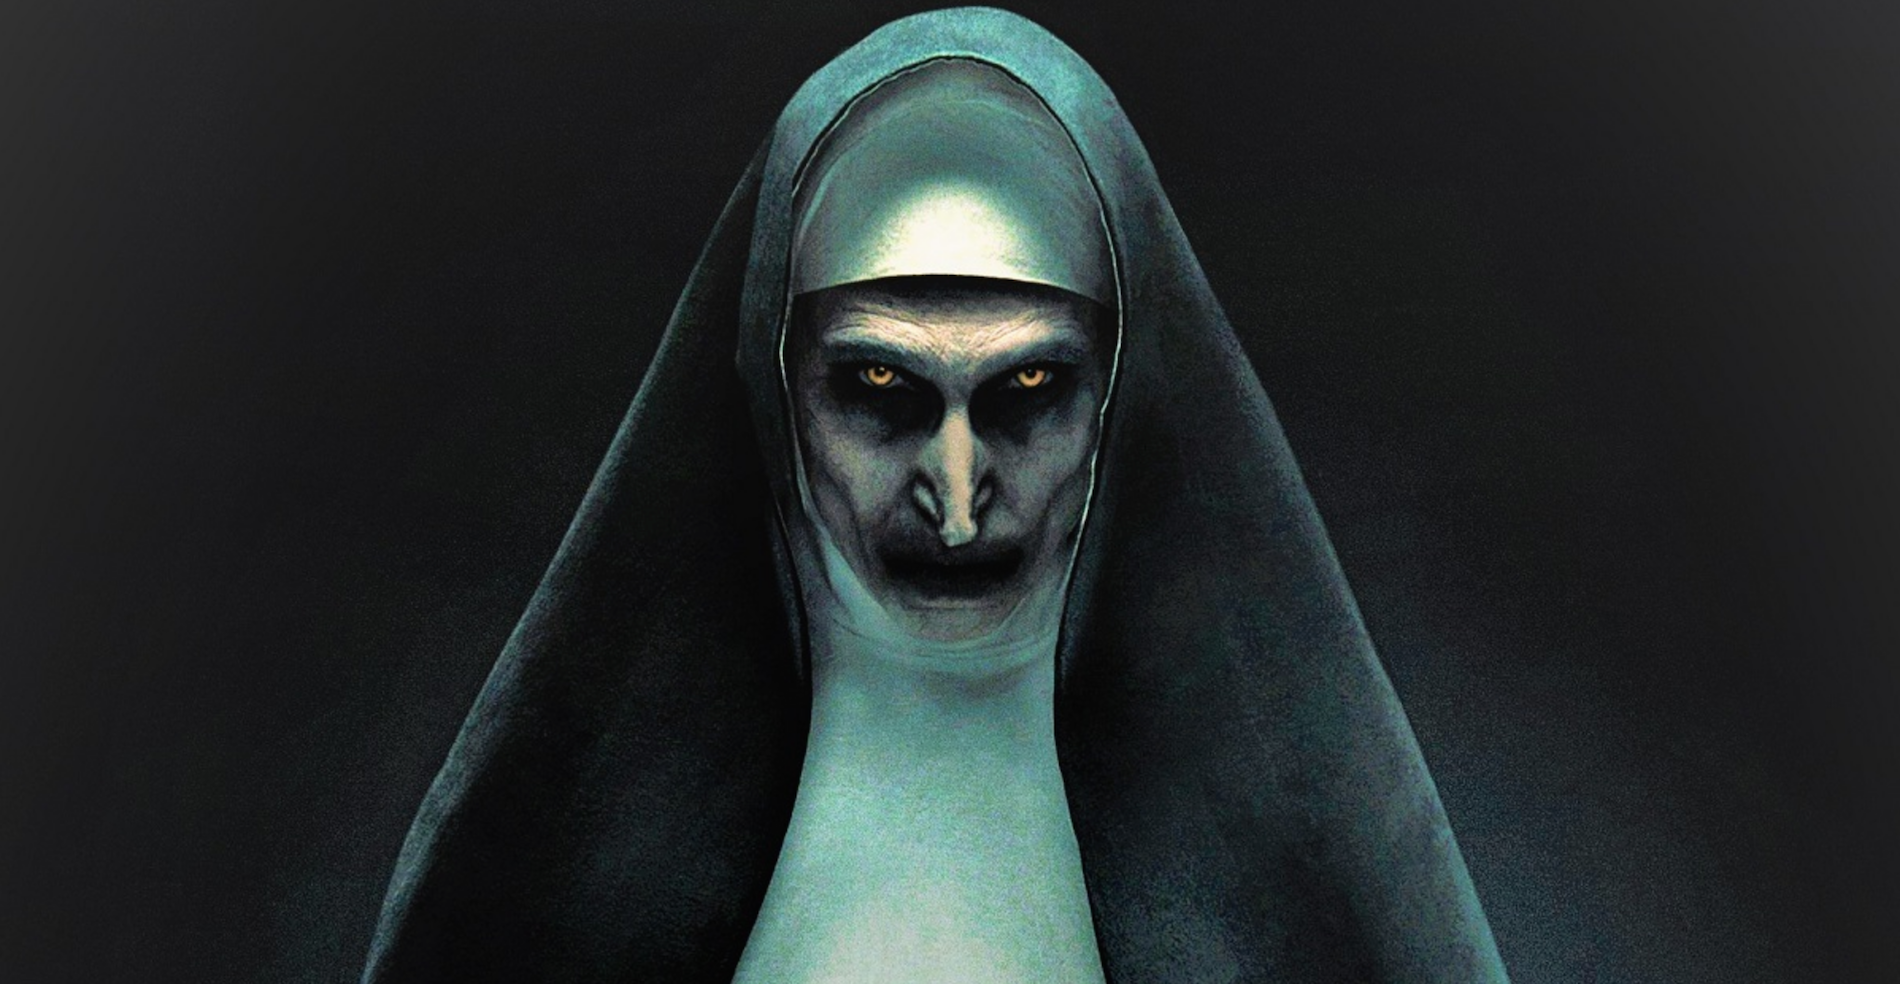 Como assistir a freira 2 de graça #comoassistirdegraca #terror #filmed